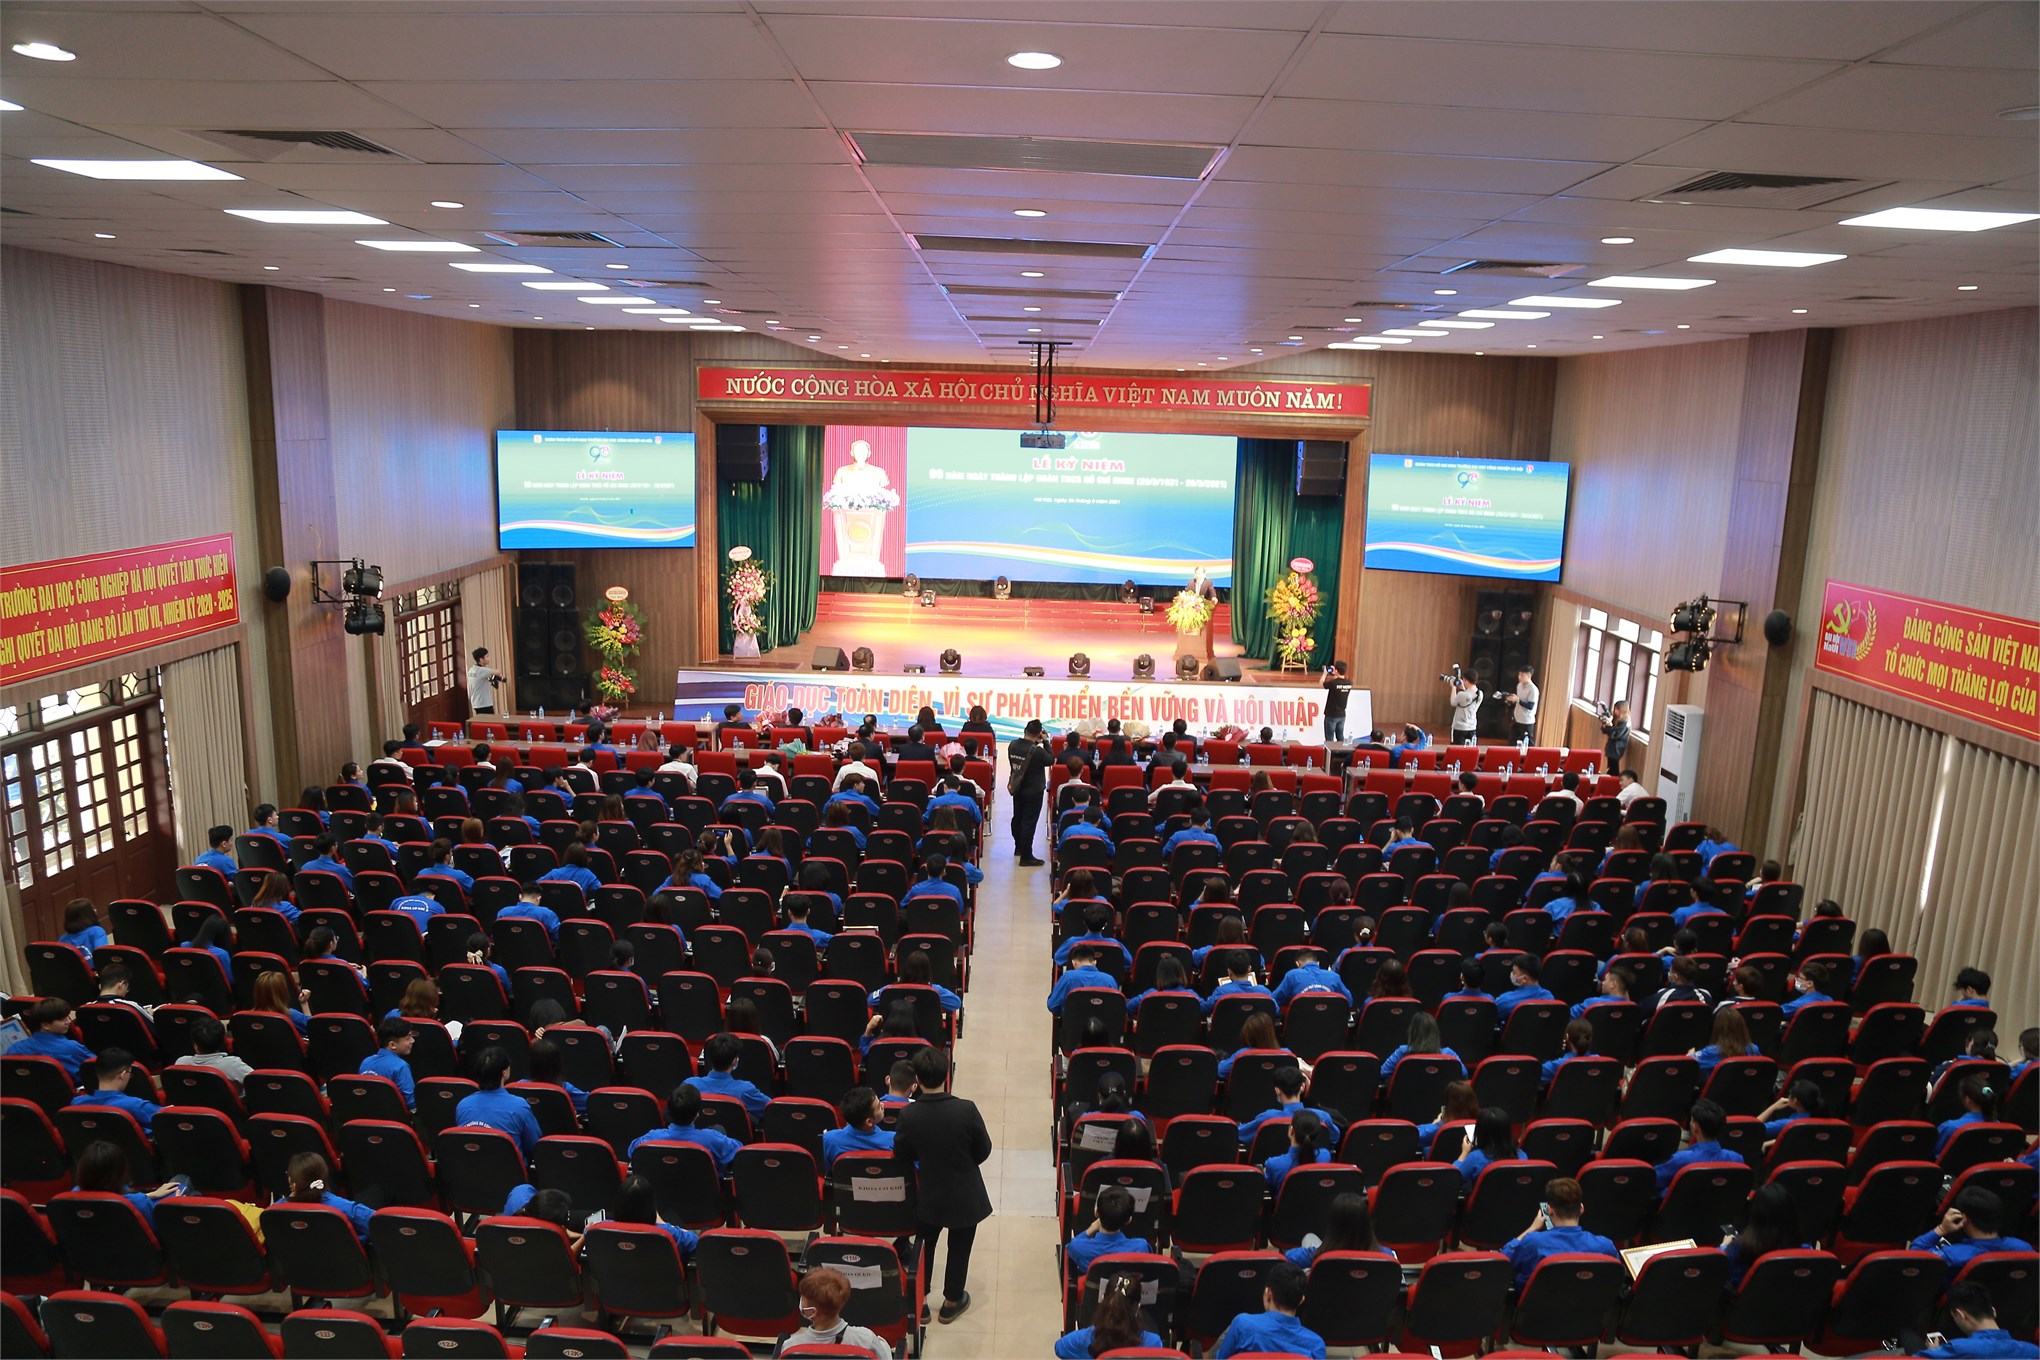 Giới thiệu cơ sở 1 - Đại học Công nghiệp Hà Nội